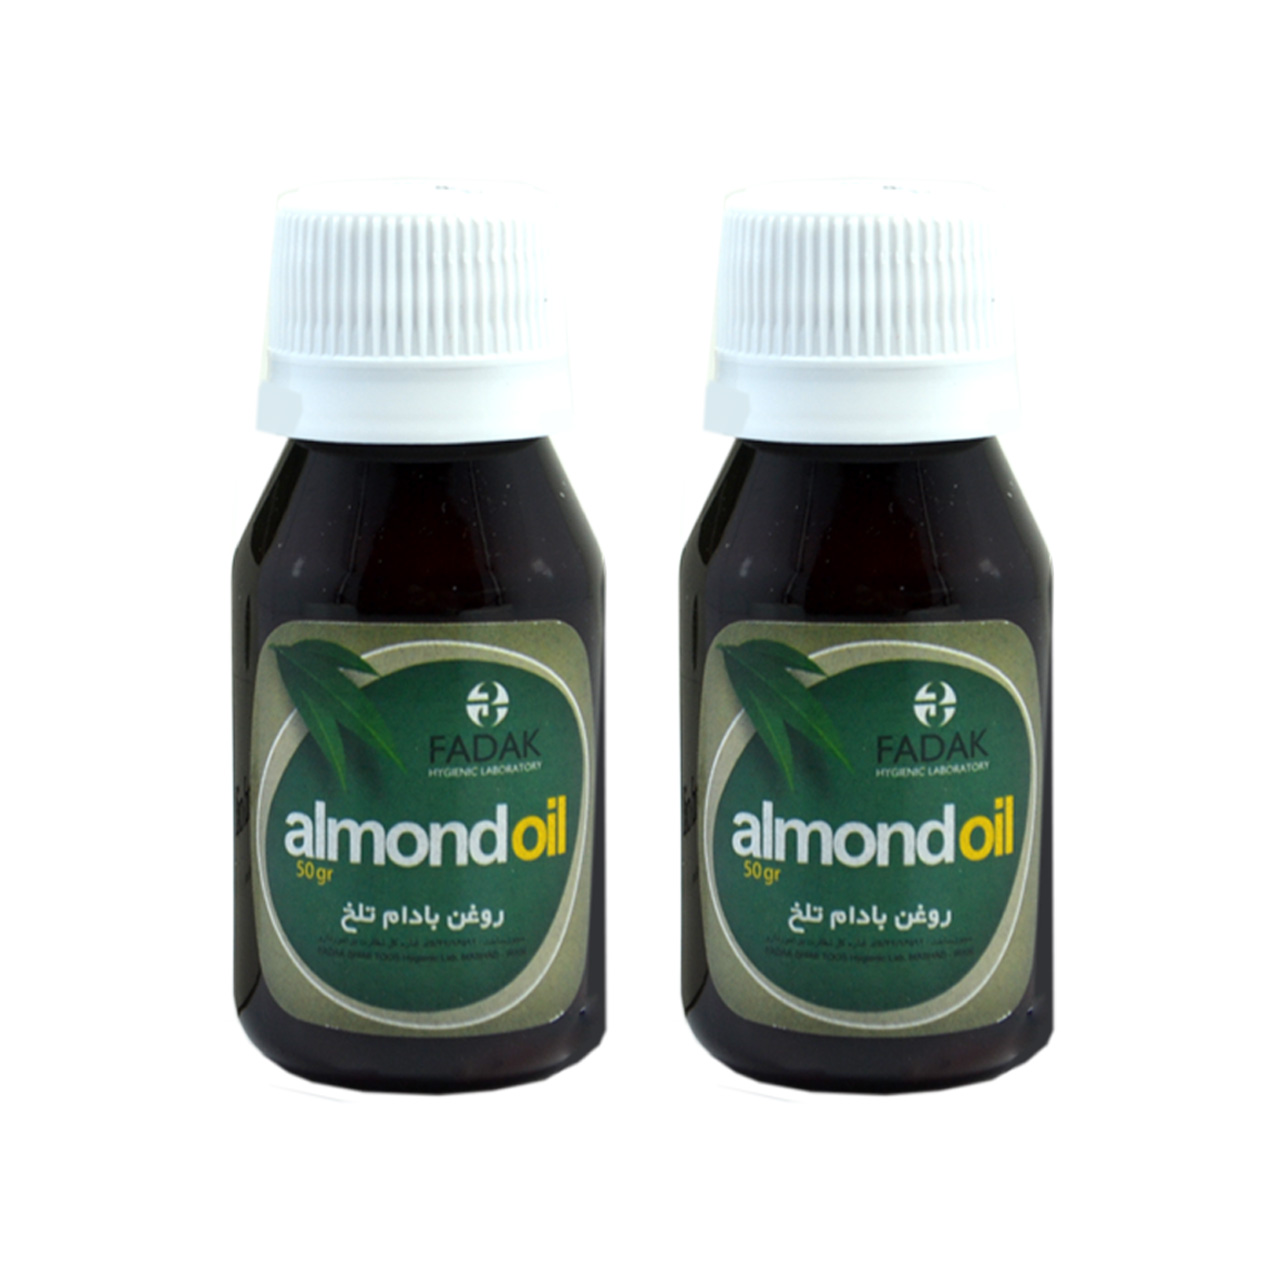  روغن بادام تلخ تنیش مدل Almond oil حجم 50 میلی لیتر مجموعه دو عددی